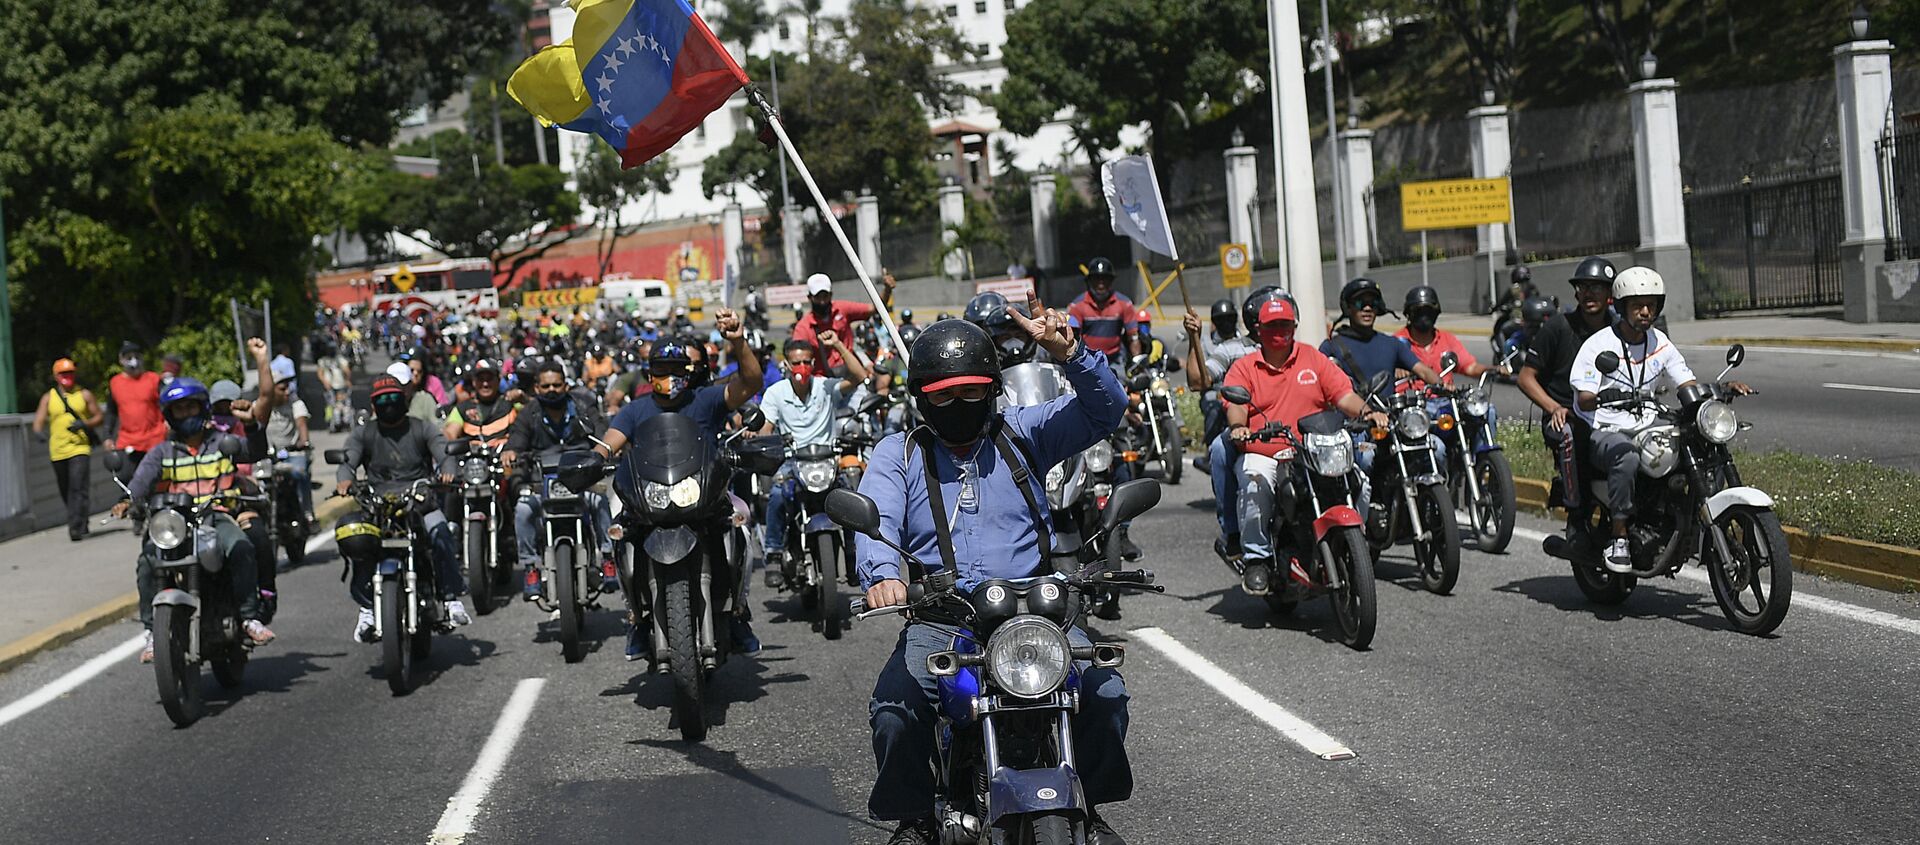 Simpatizantes del presidente Nicolás Maduro conducen en motocicleta cerca del Palacio de Miraflores. Caracas, 12 de diciembre de 2020 - Sputnik Mundo, 1920, 27.01.2021